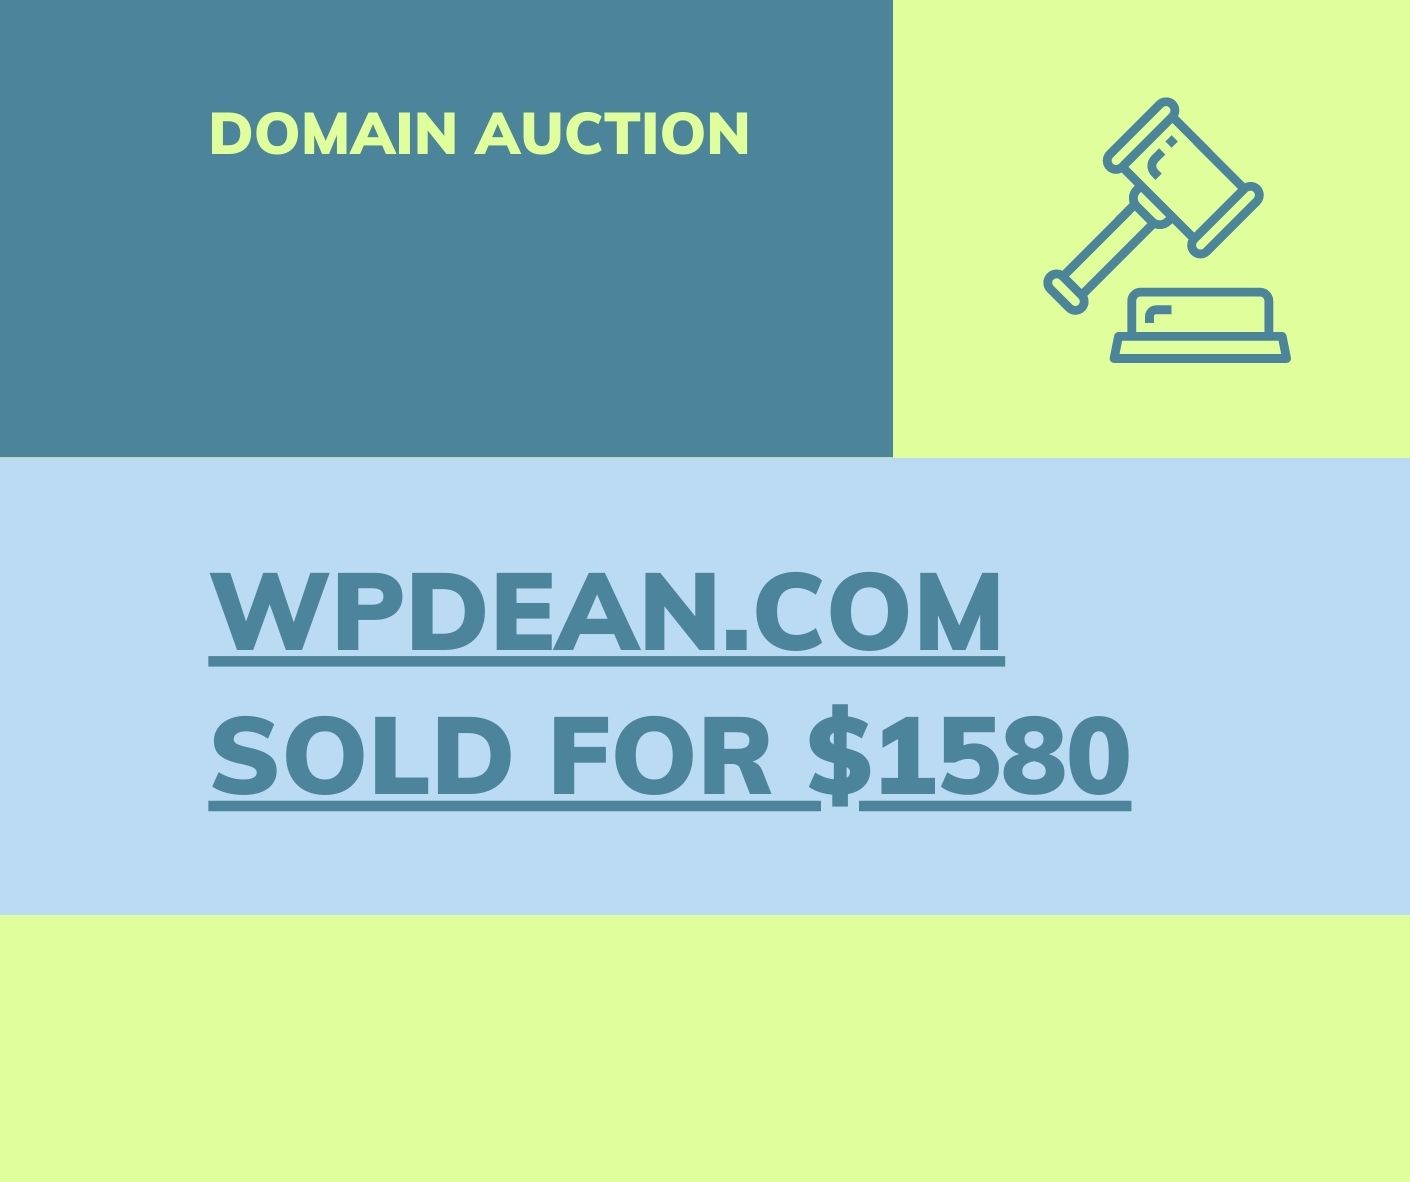 wpdean.com sold